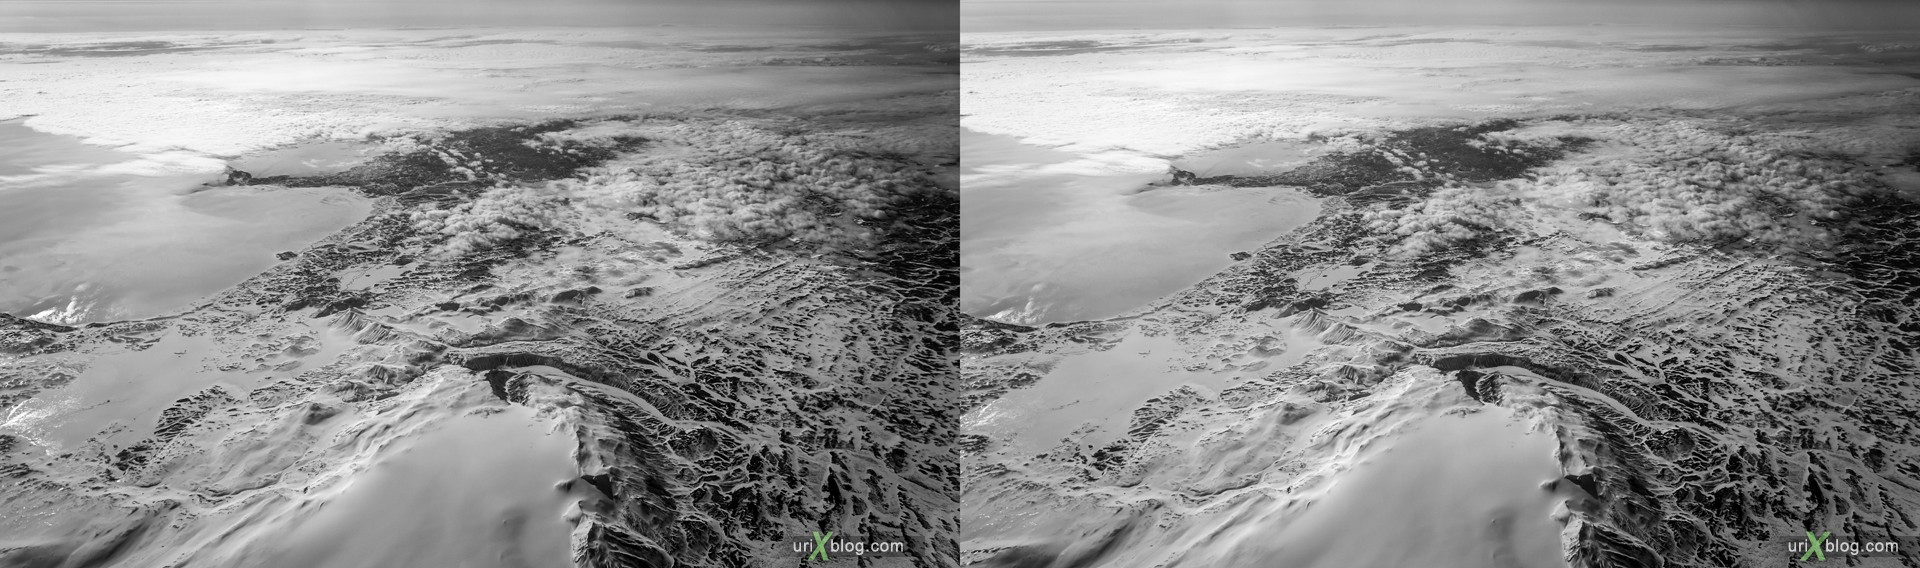 2013, Исландия, горы, панорама, самолёт, чёрно-белое, чб, снег, лёд, облака, горизонт, 3D, перекрёстные стереопары, стерео, стереопара, стереопары